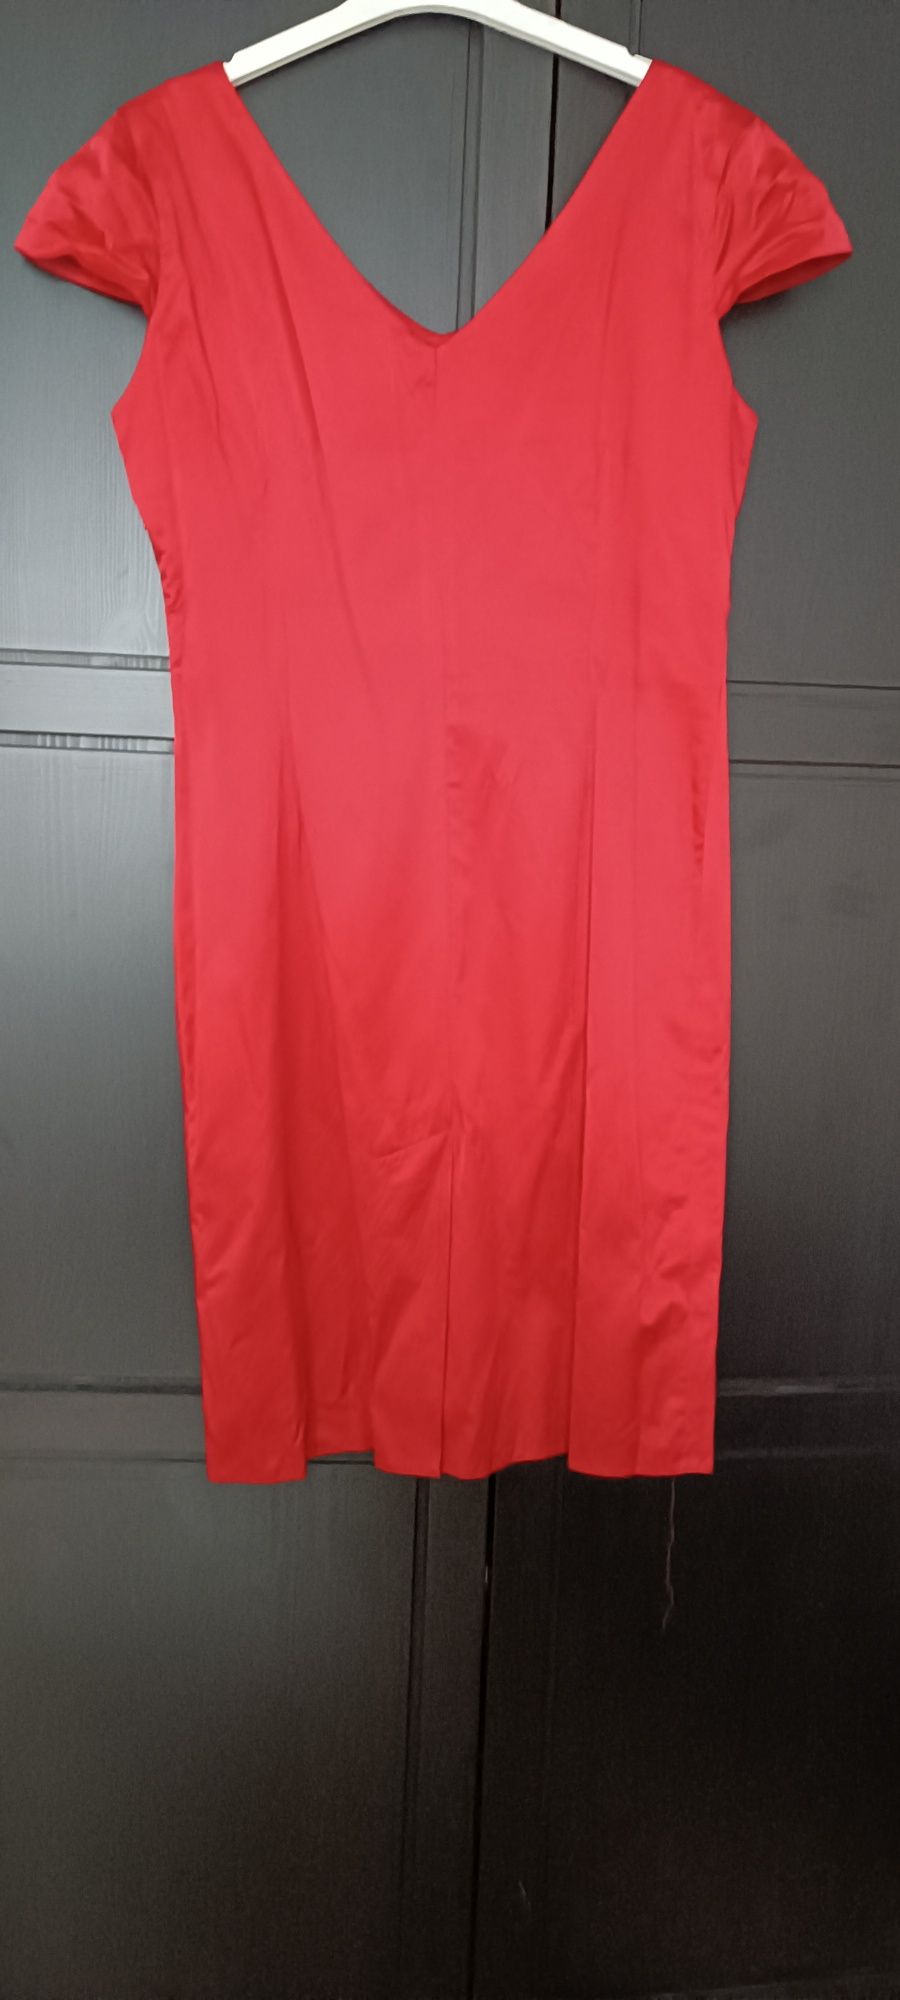 Czerwona sukienka z kokardą ślub komunia chrzciny 44 Zara reserved man